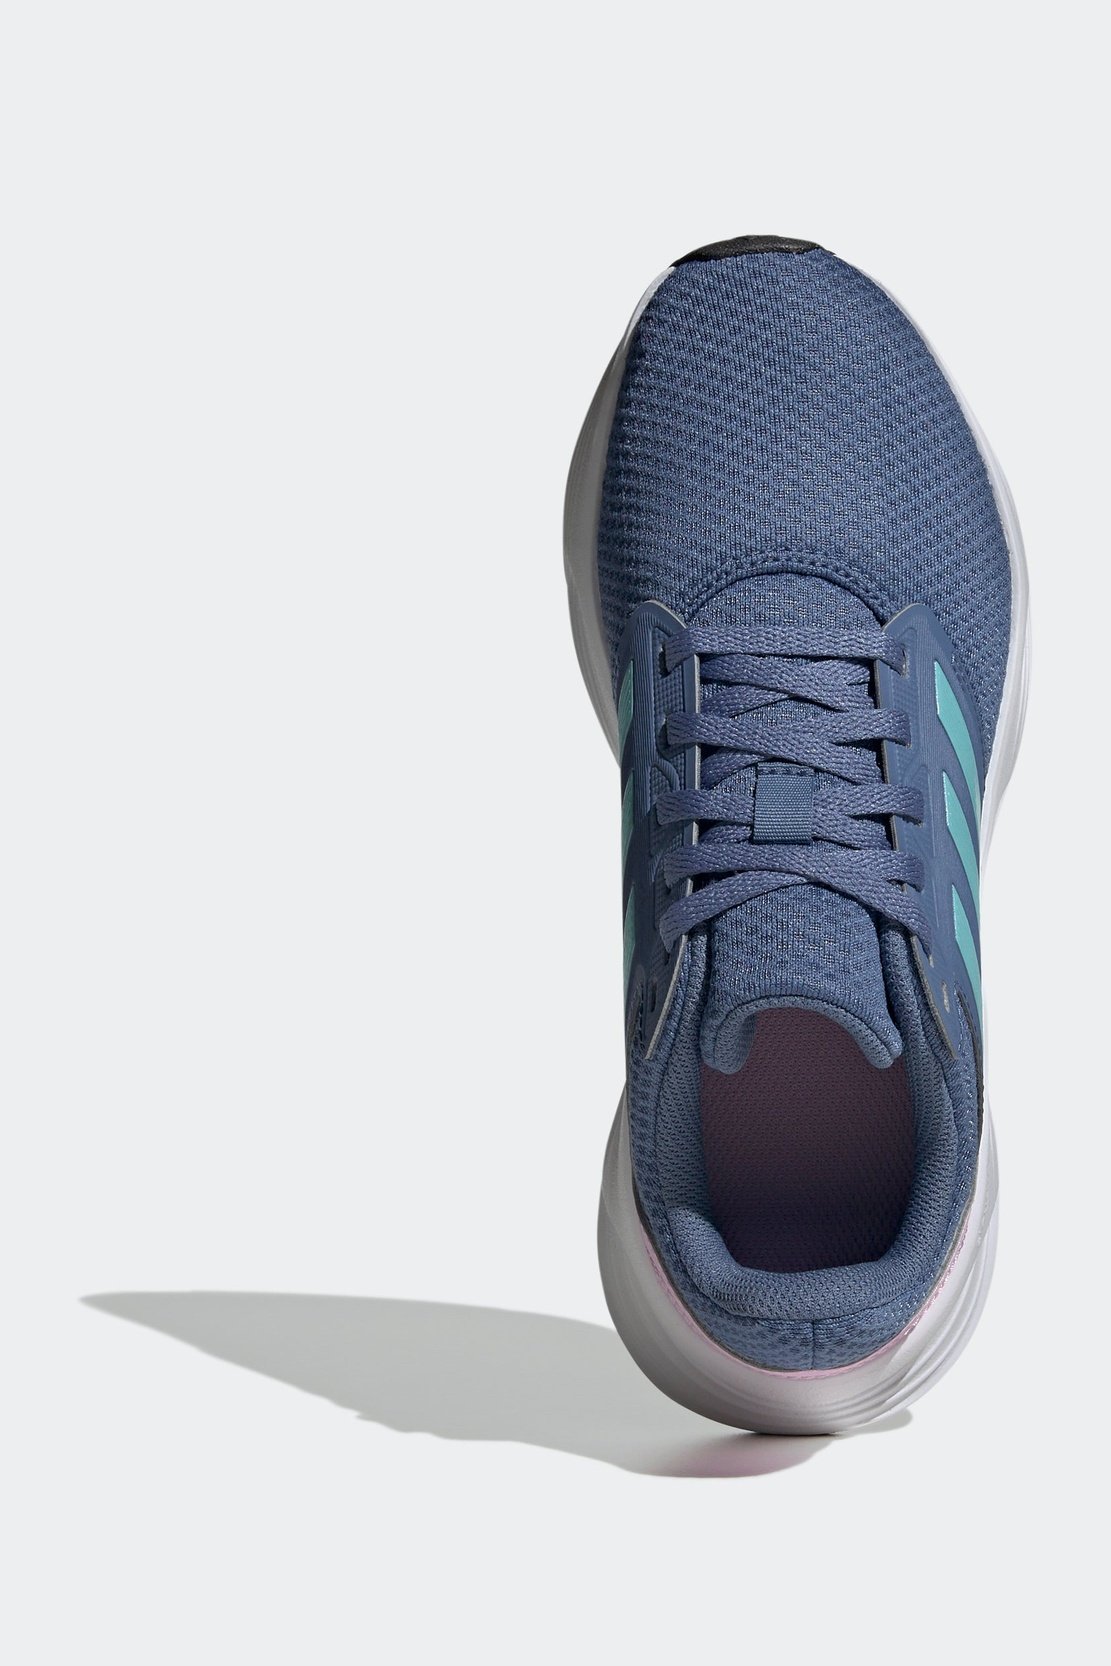 נעלי ספורט לנשים GALAXY 6 בצבע כחול ורוד ולבן